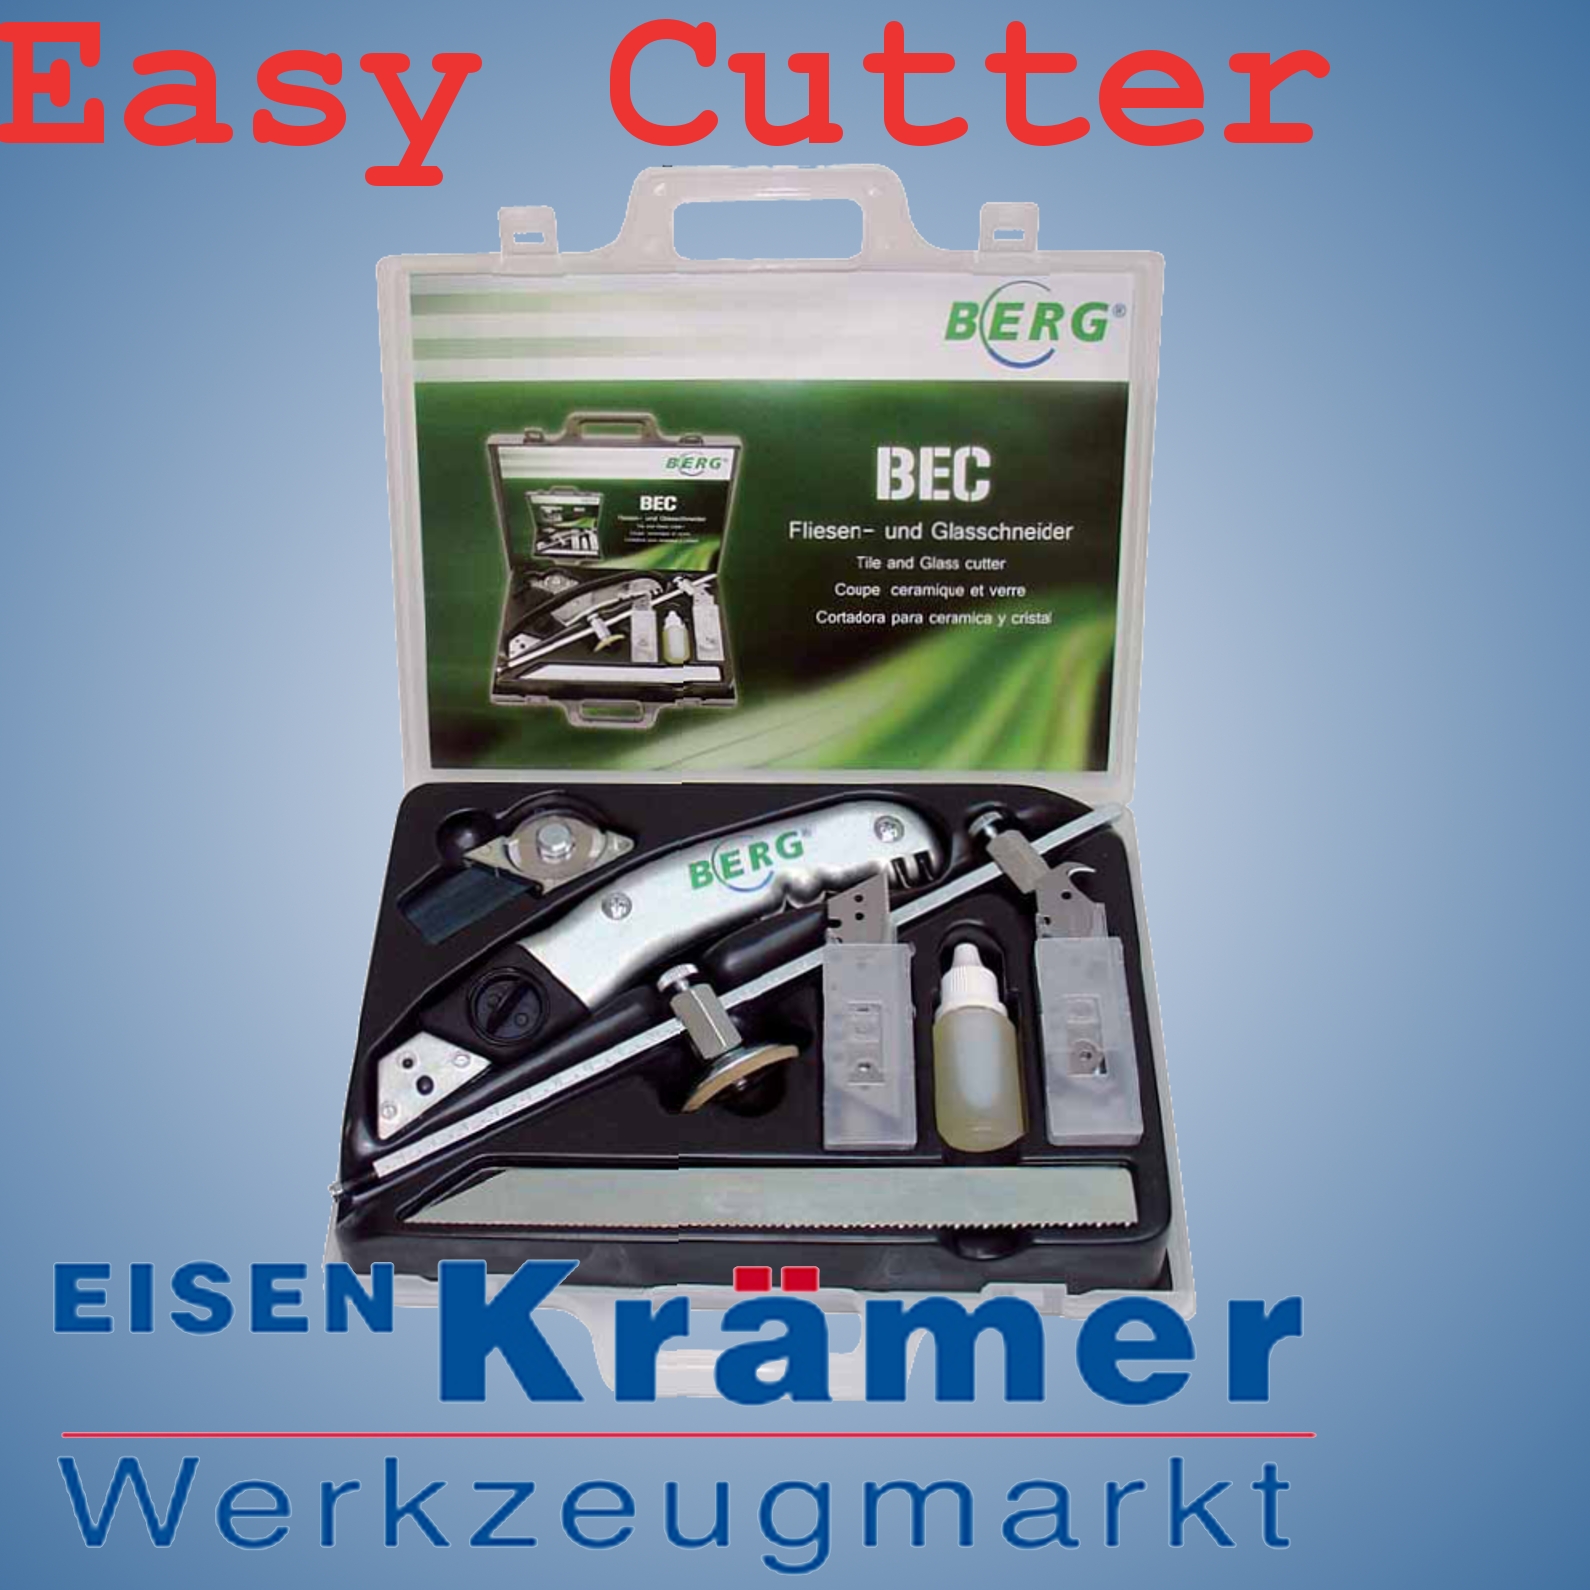 Berg-Tectool Fliesen- und Glasschneider-Set Easy Cutter Bec